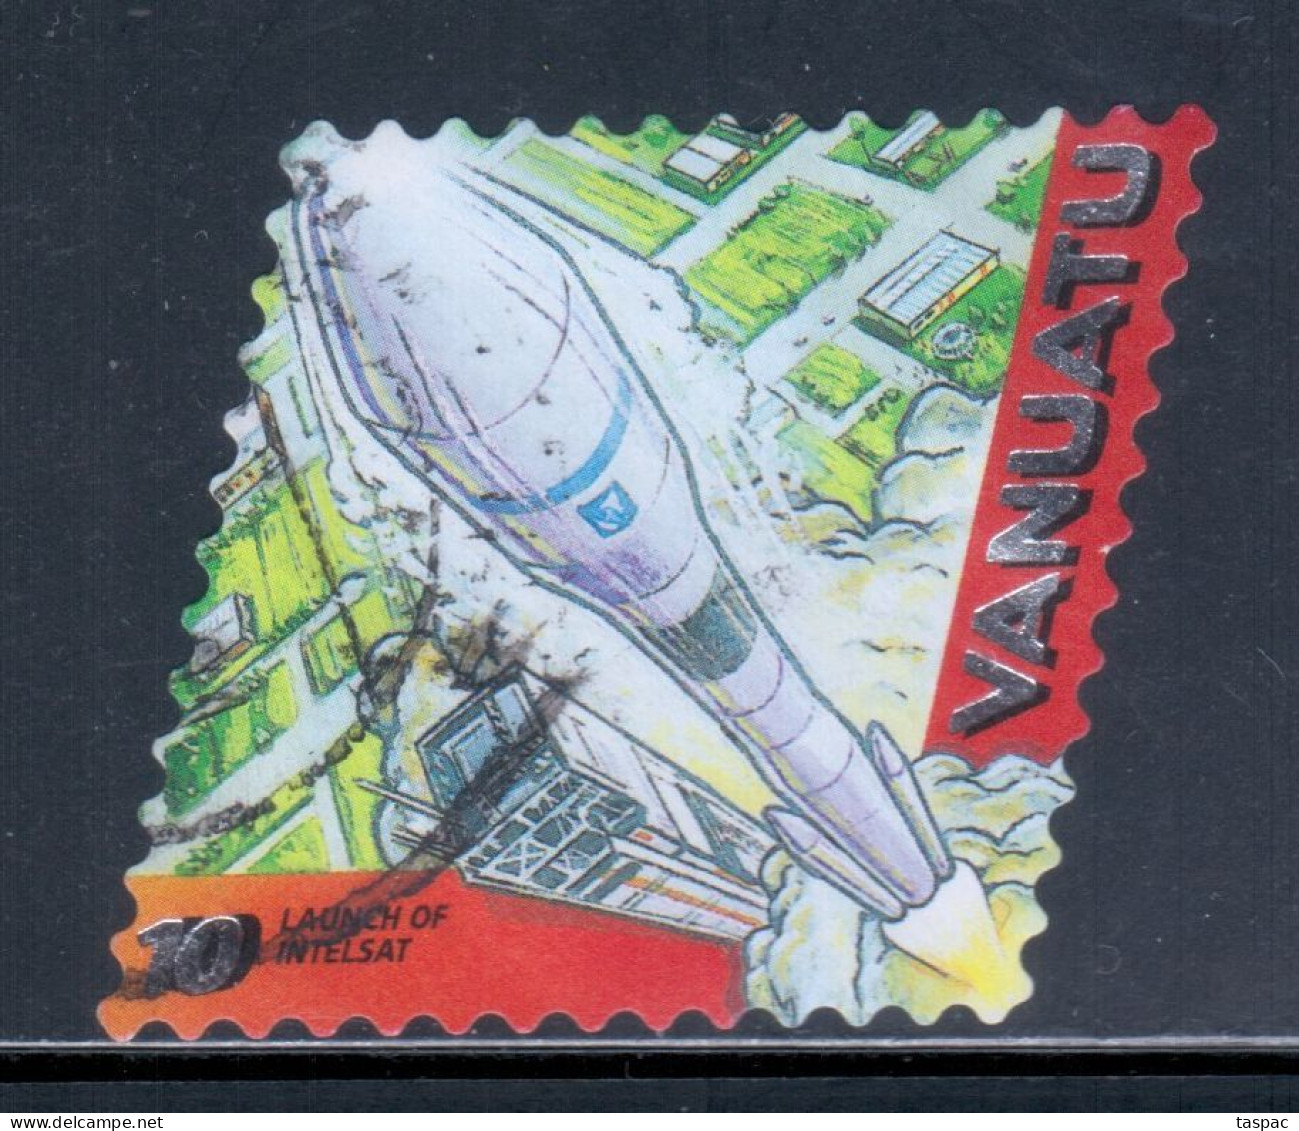 Vanuatu 2000 Mi# 1112 Used - Short Set - Launch Of Intelsat / Space - Oceania